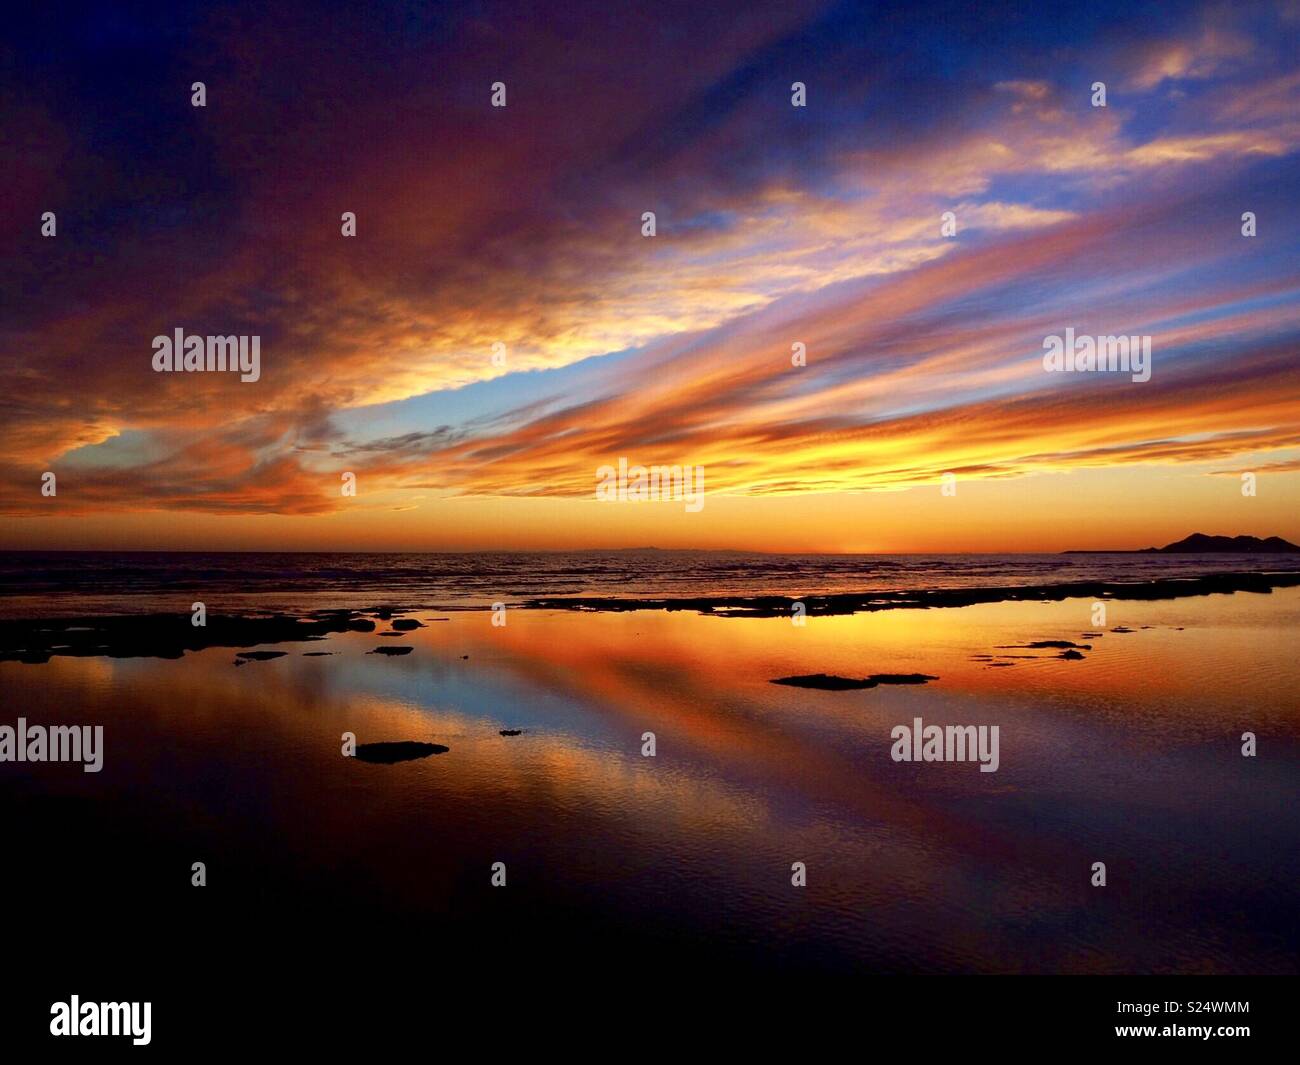 Puerto peñasco sunset Stock Photo